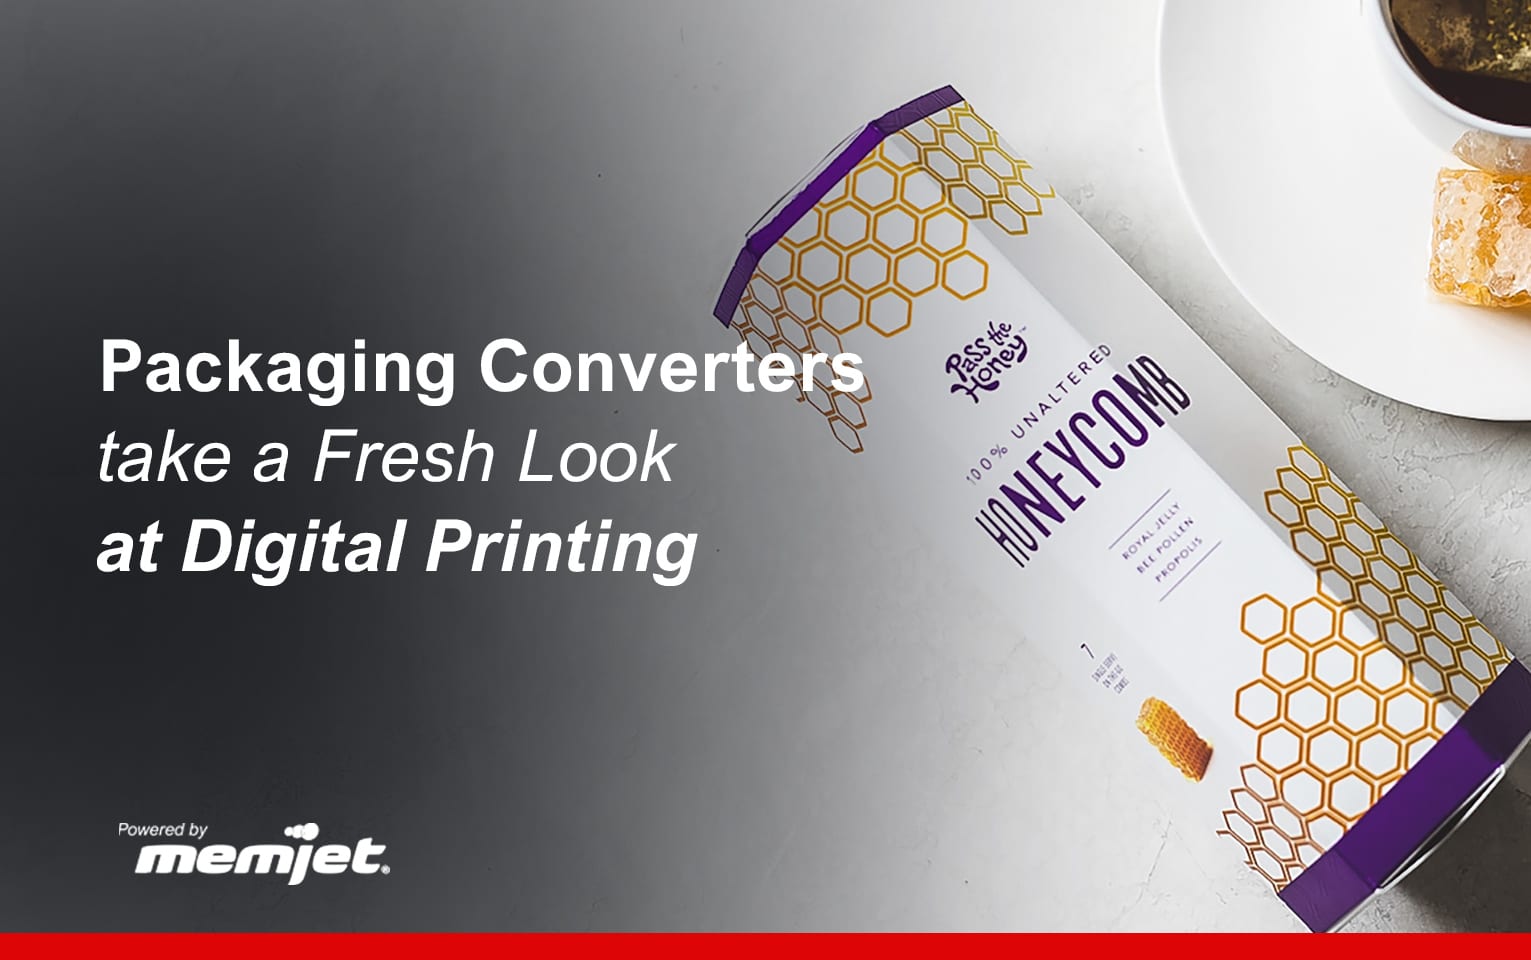 Packaging Converters Take A Fresh Look at Digital Printing